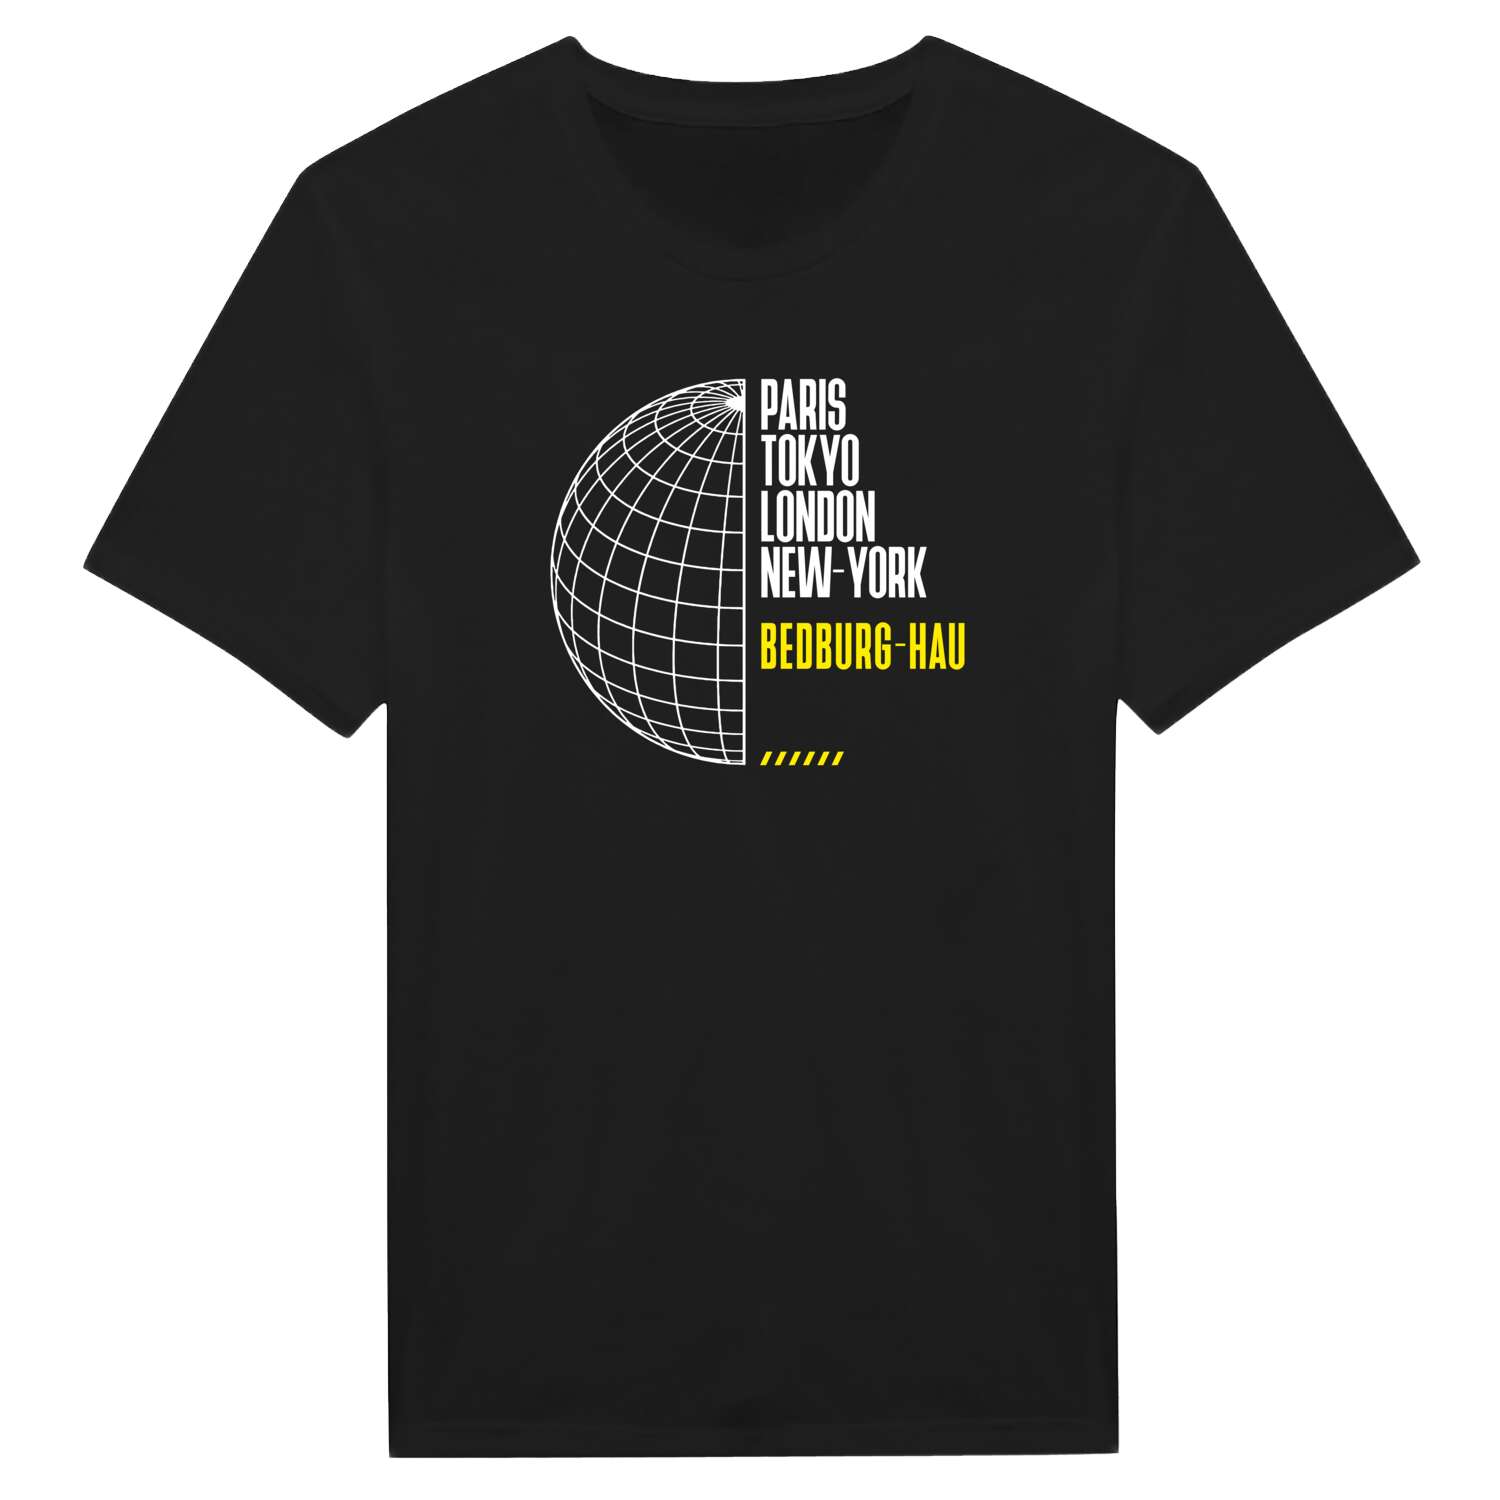 Bedburg-Hau T-Shirt »Paris Tokyo London«